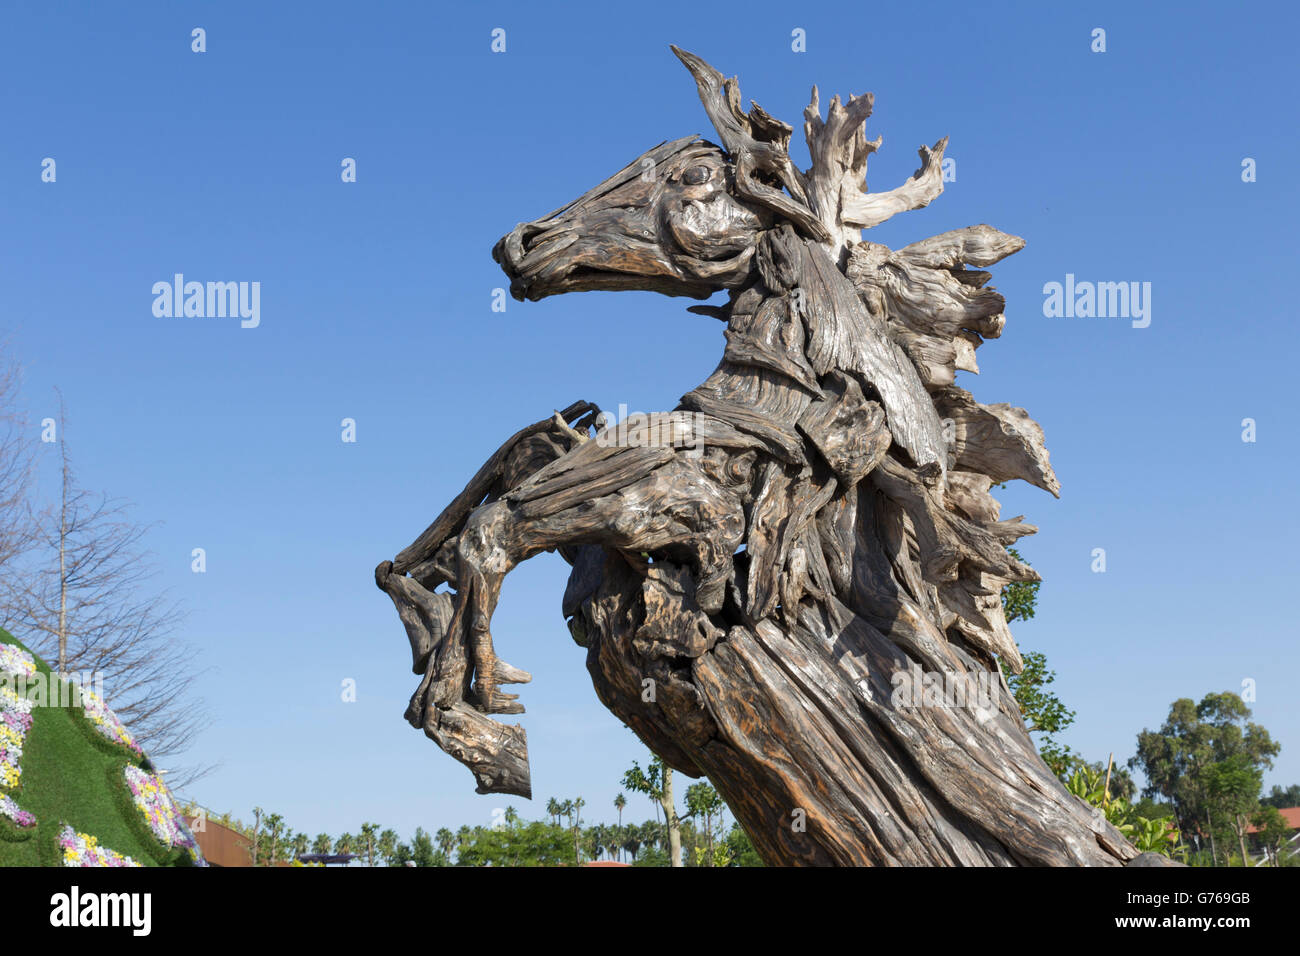 Cheval de bois sculpture statue in park Banque D'Images